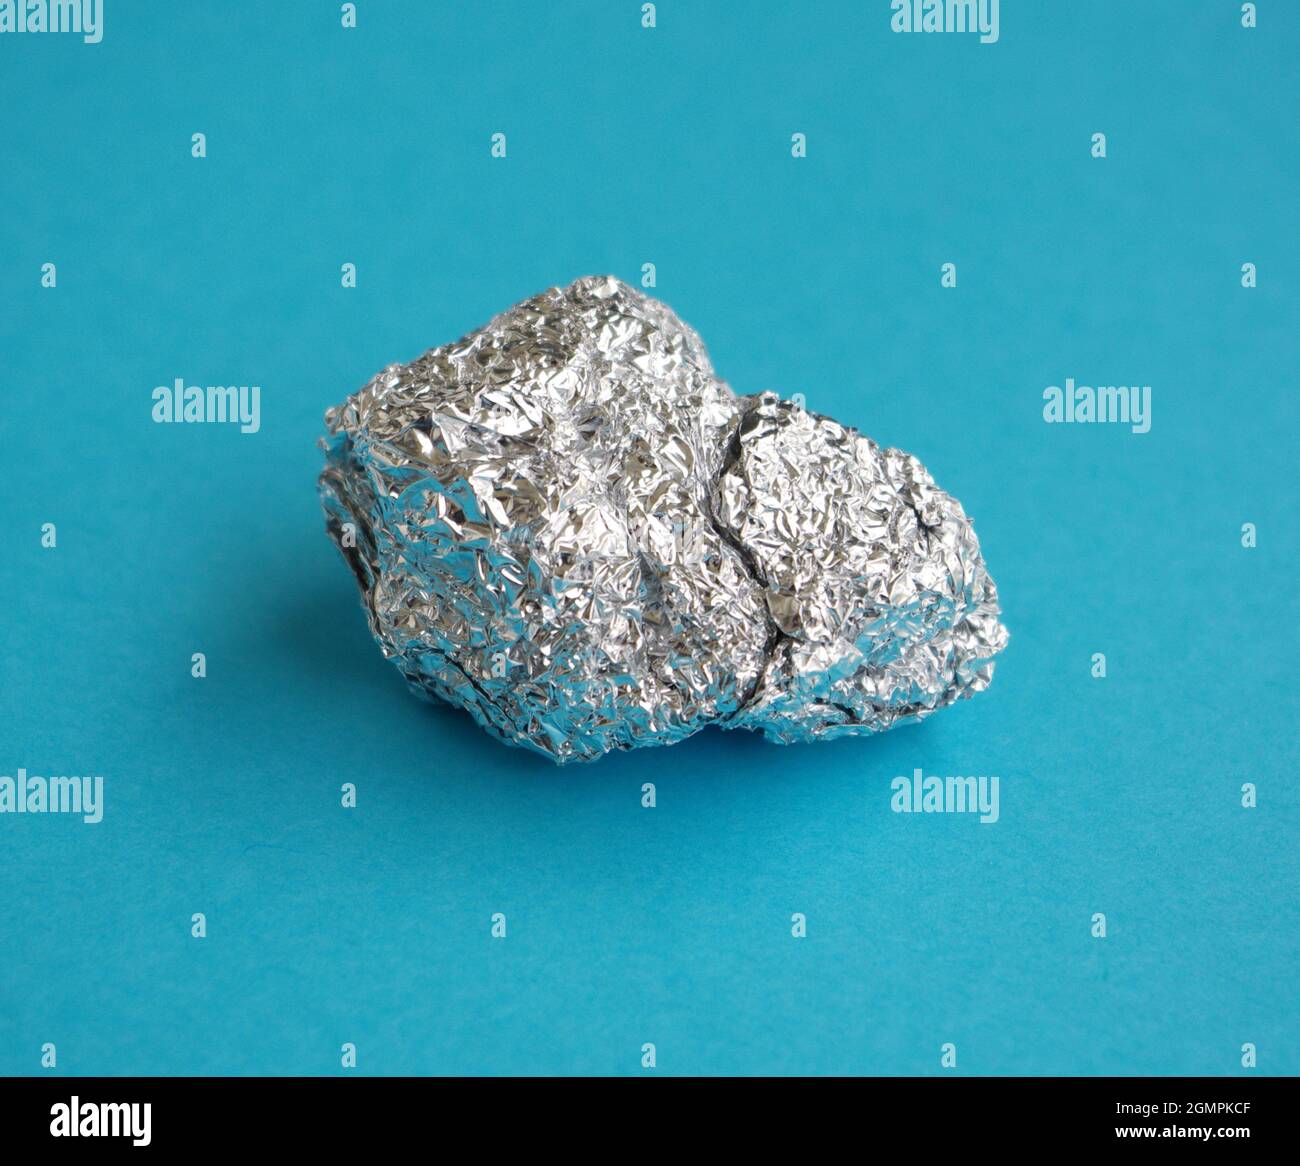 Aluminium. Feuille d'aluminium argentée avec des feuilles de papier d'aluminium froissés et brillants sur fond bleu. Les prix de l'aluminium ont atteint un record. Banque D'Images